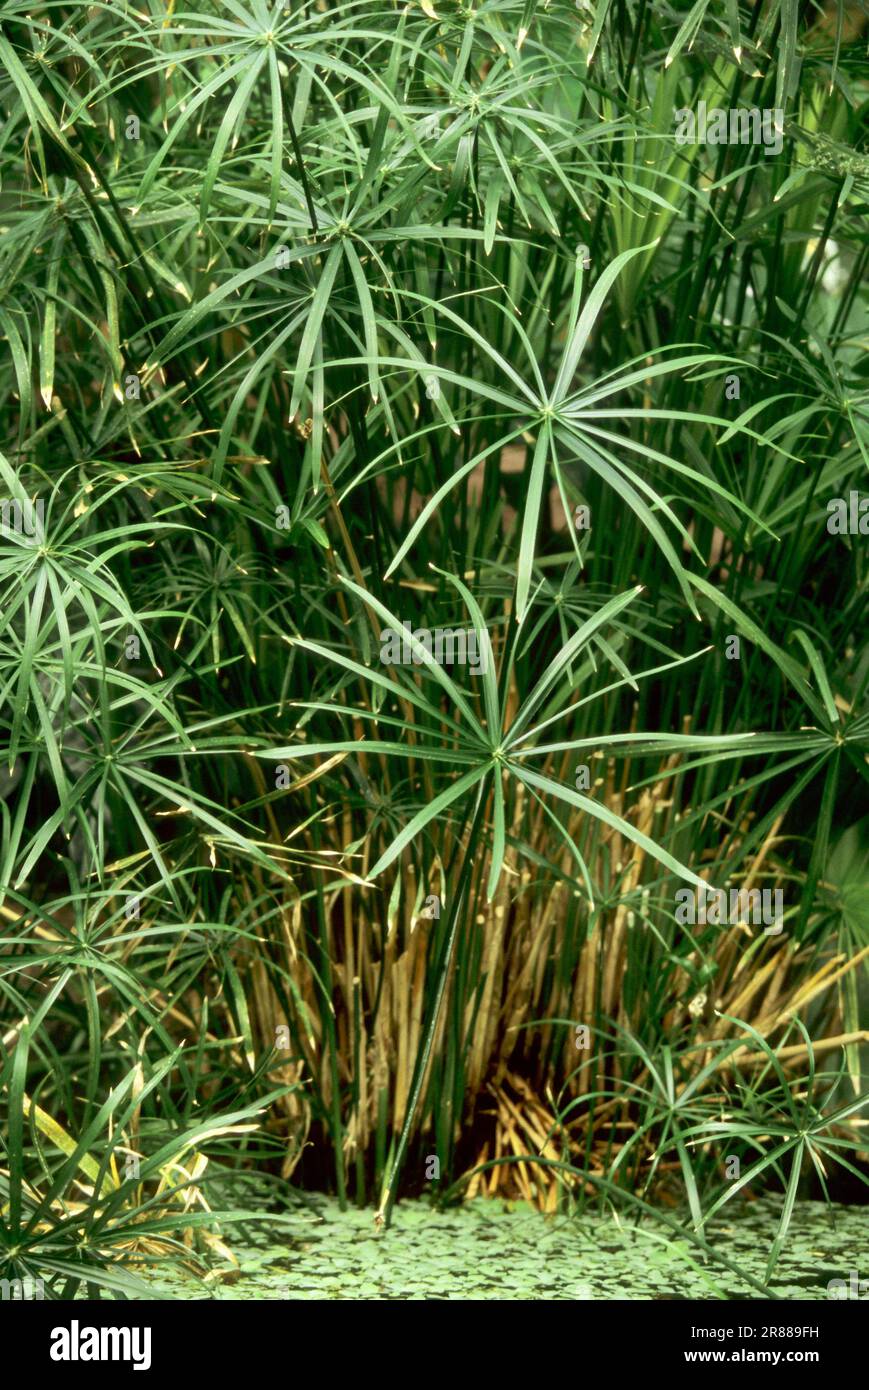 Umbrella papyrus (Cyperus alternifolius) (Cyperus involucratus), umbrella papyrus, umbrella sedge Stock Photo